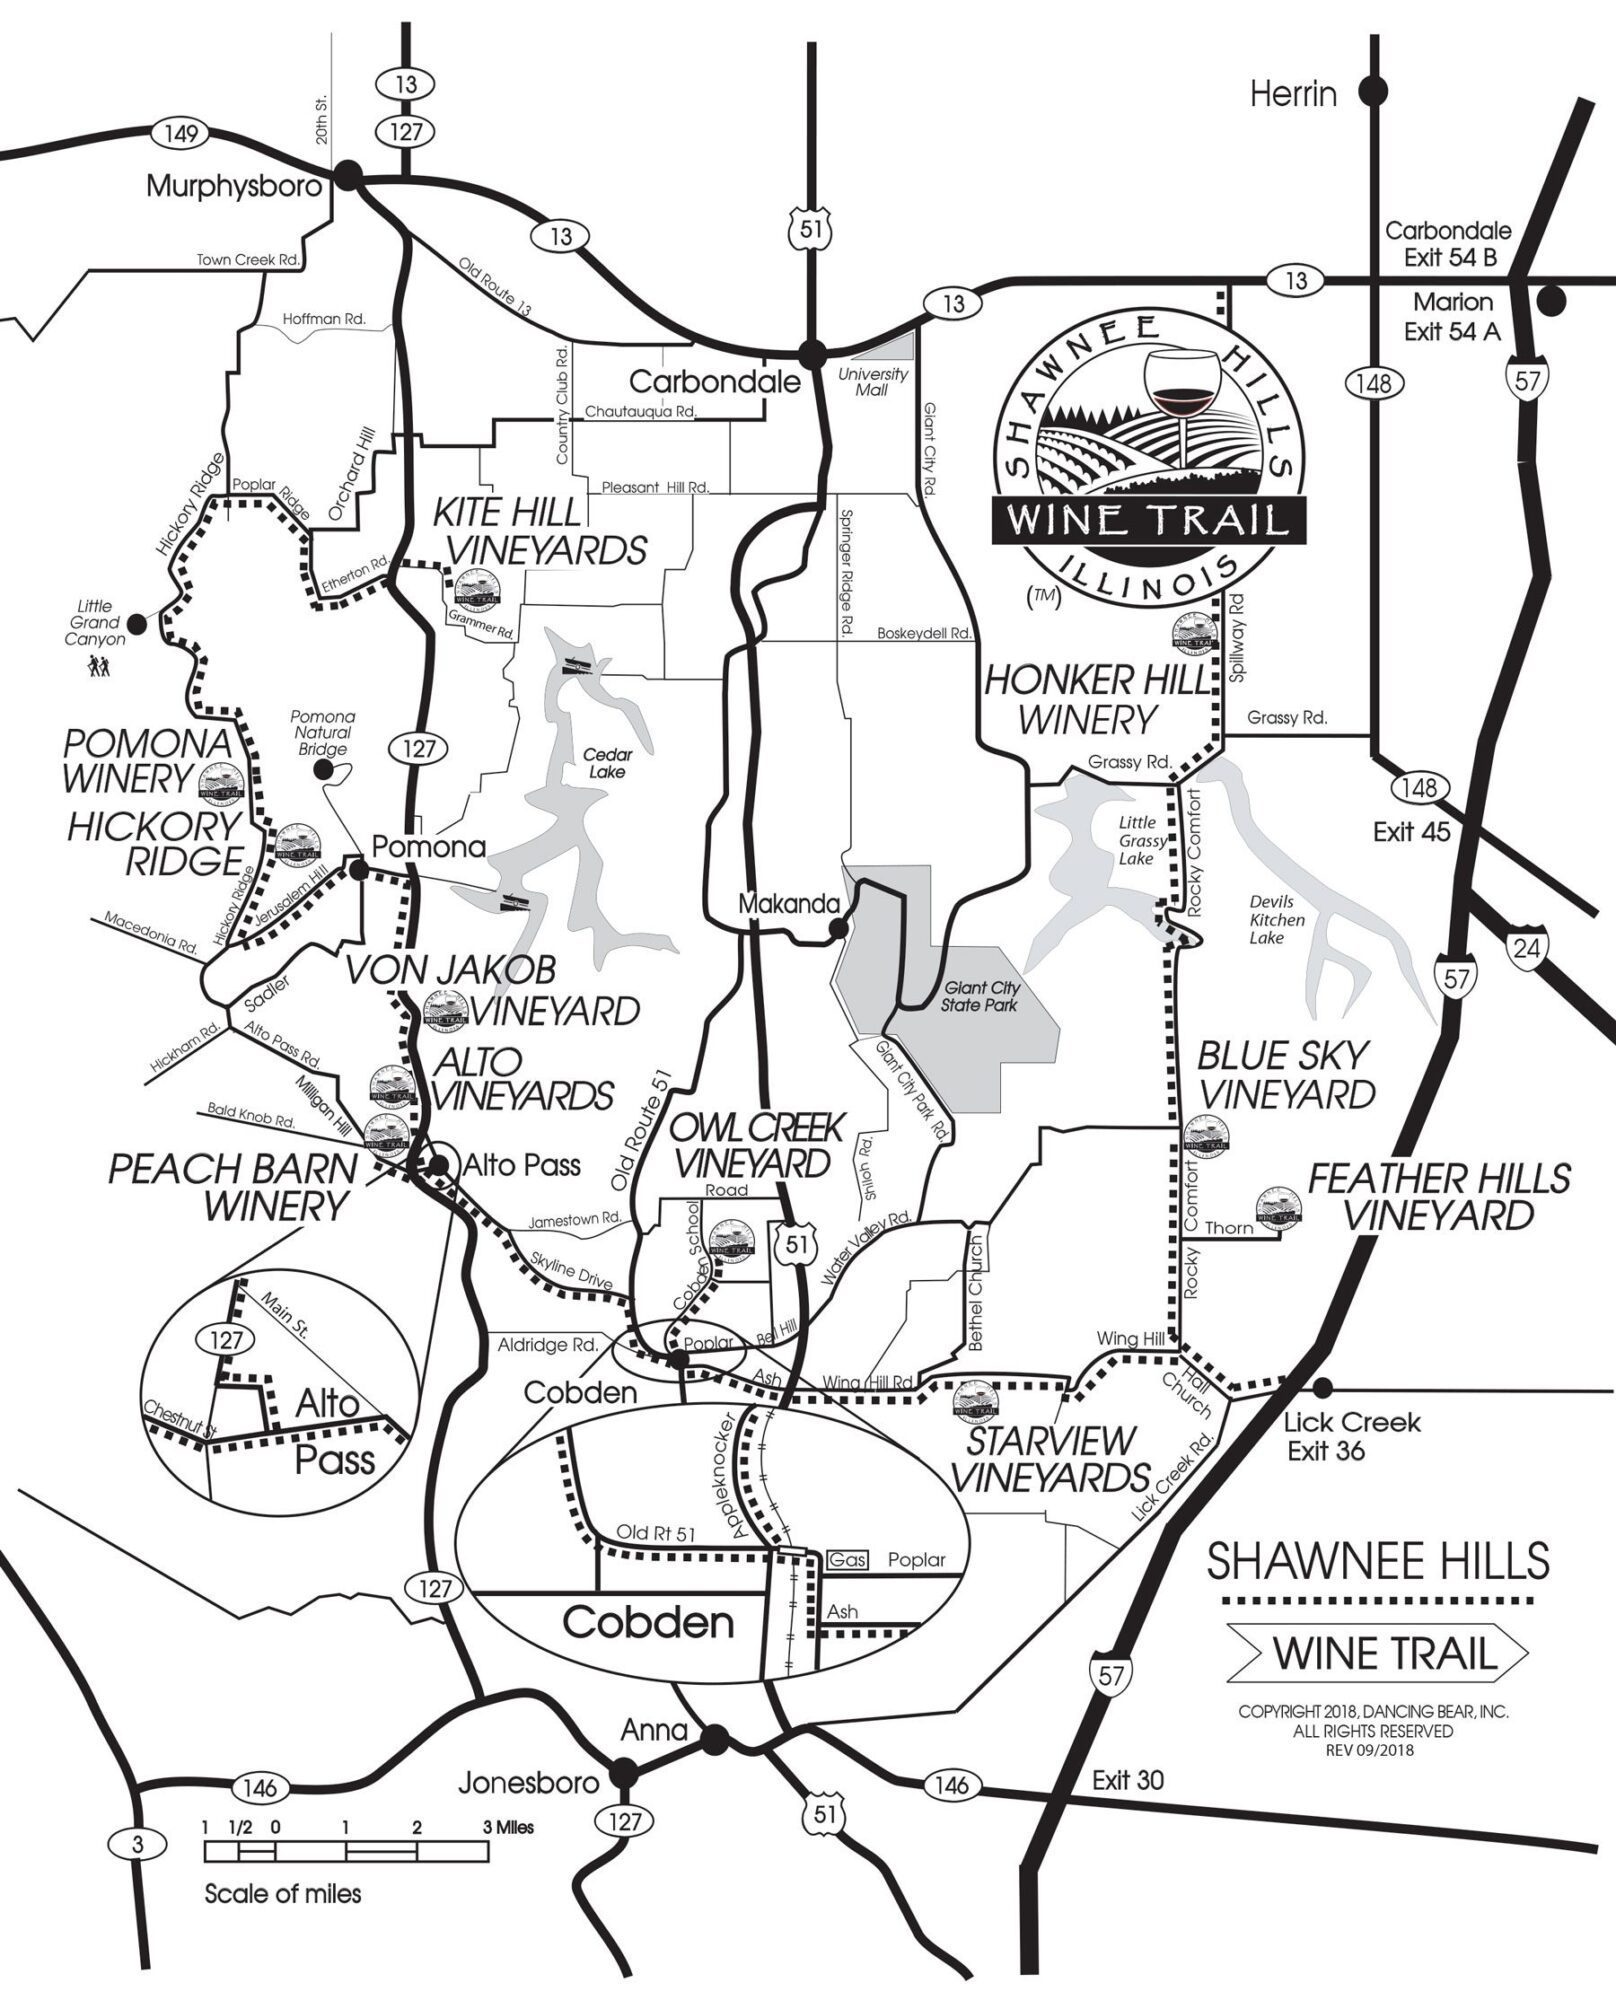 shawnee hills wine trail map